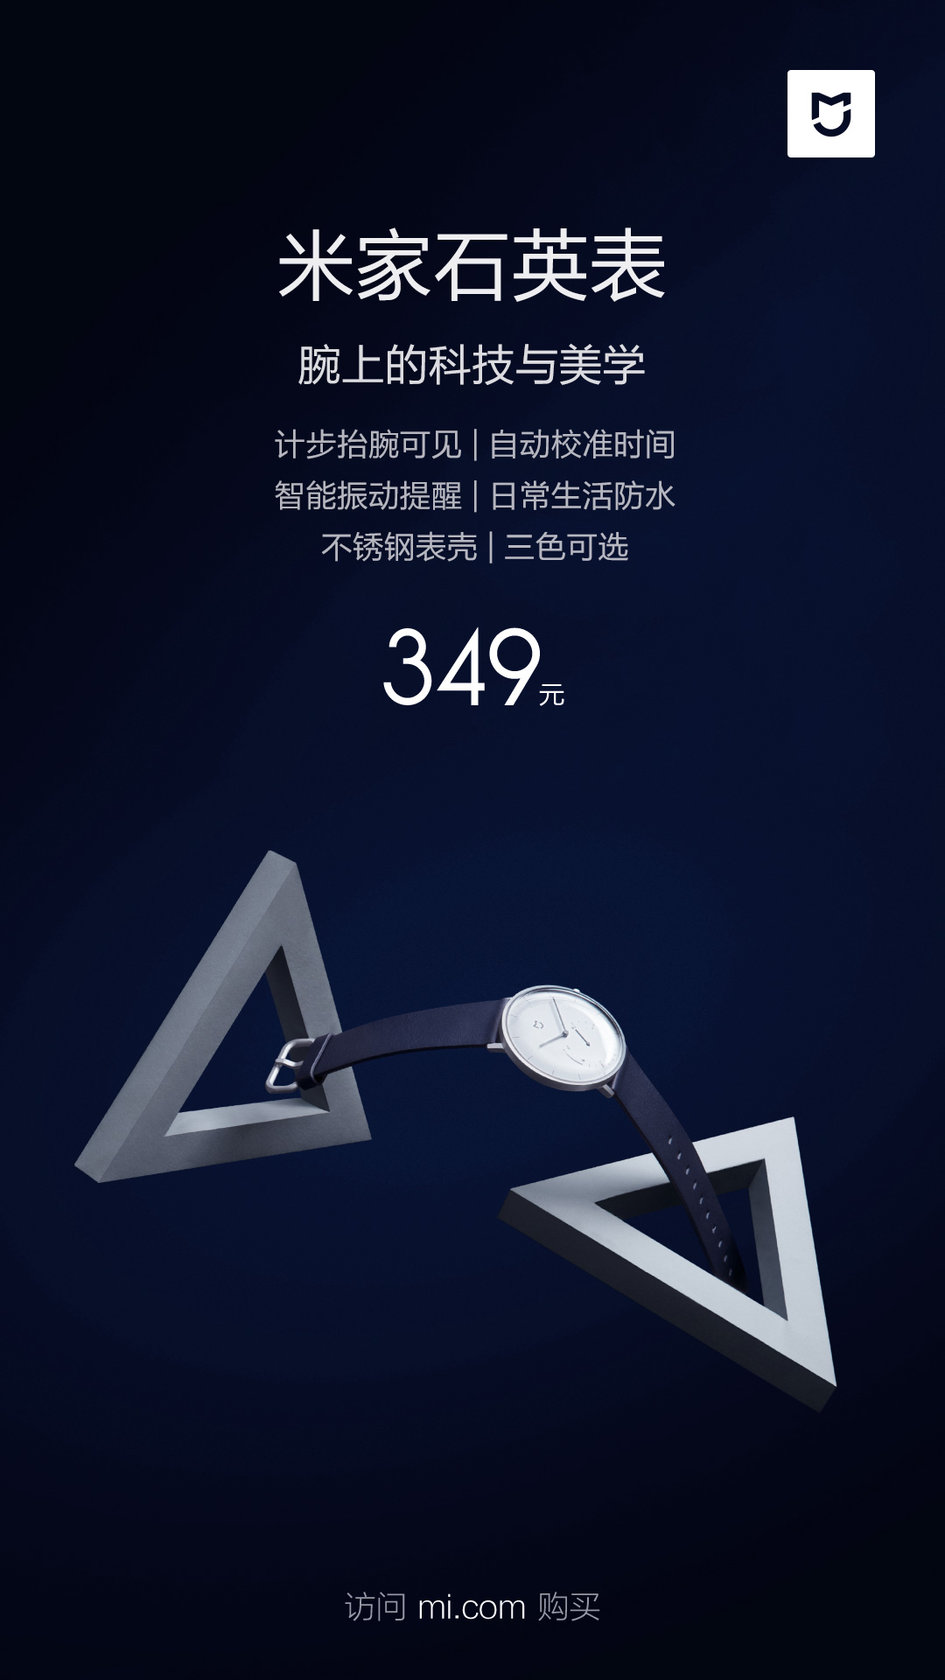 Xiaomi'nin 52 dolarlık klasik akıllı saati 'Mijia Quartz Watch' tanıtıldı